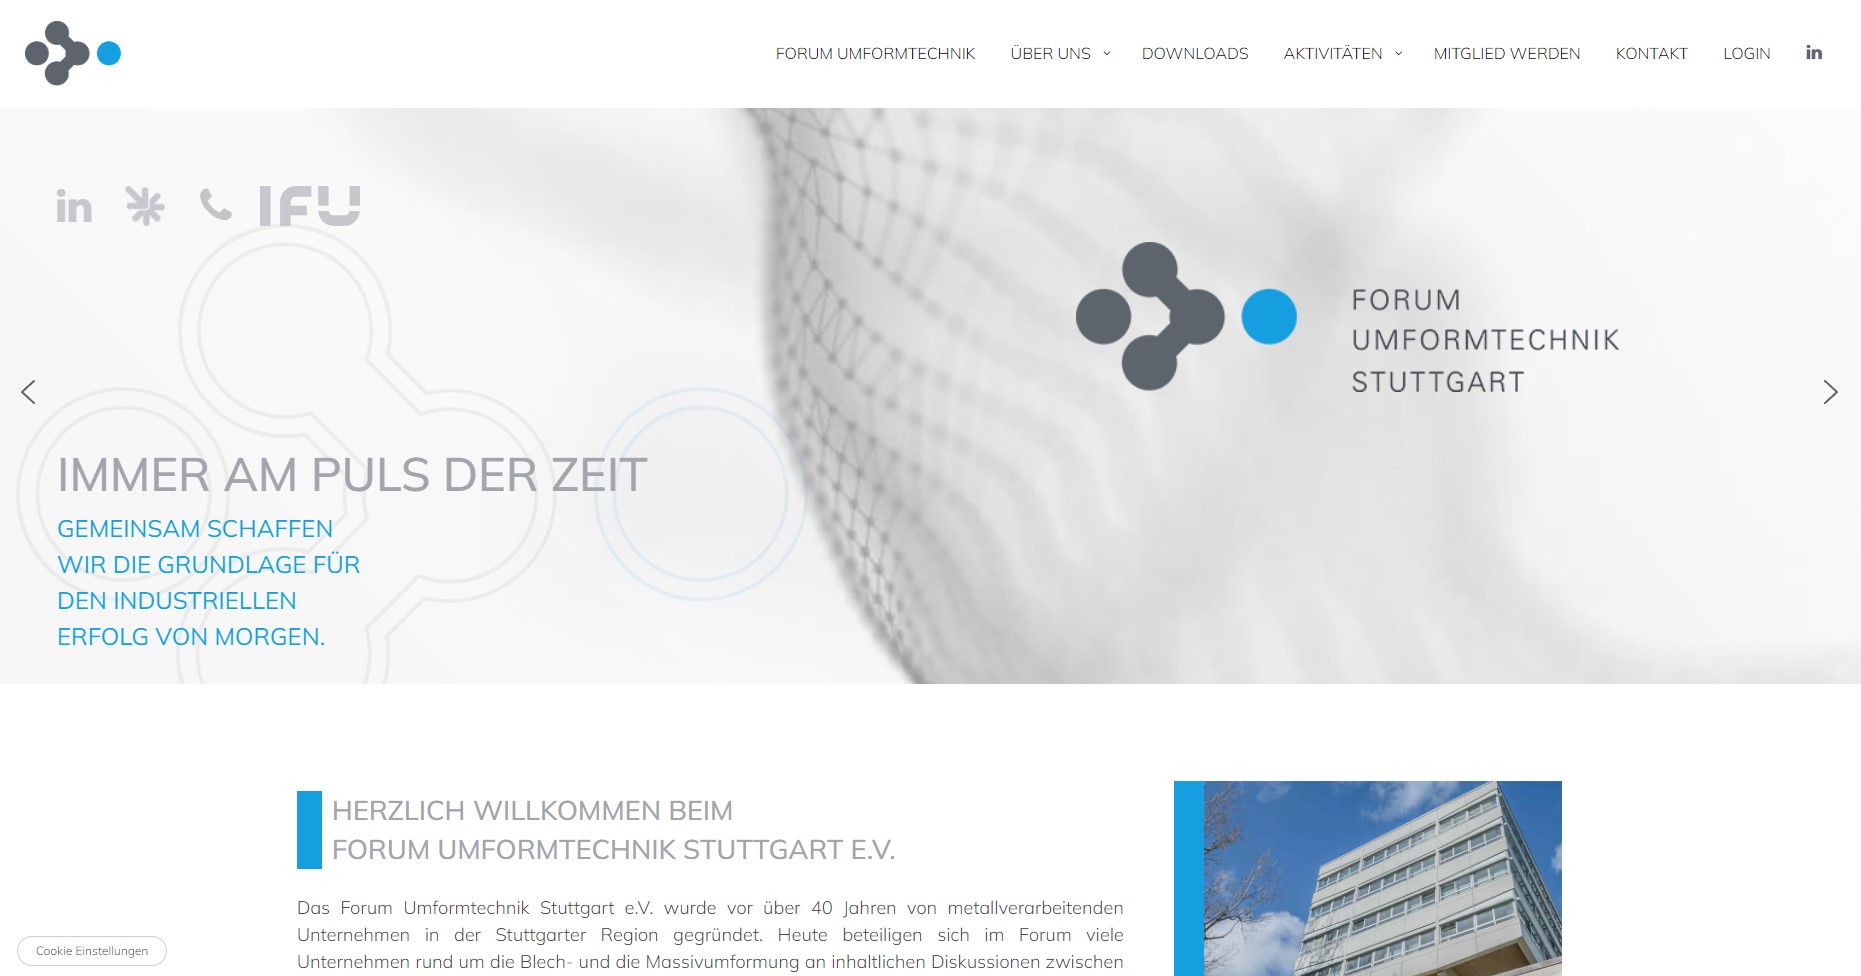 Webdesign für ein Projekt der Universität Stuttgart